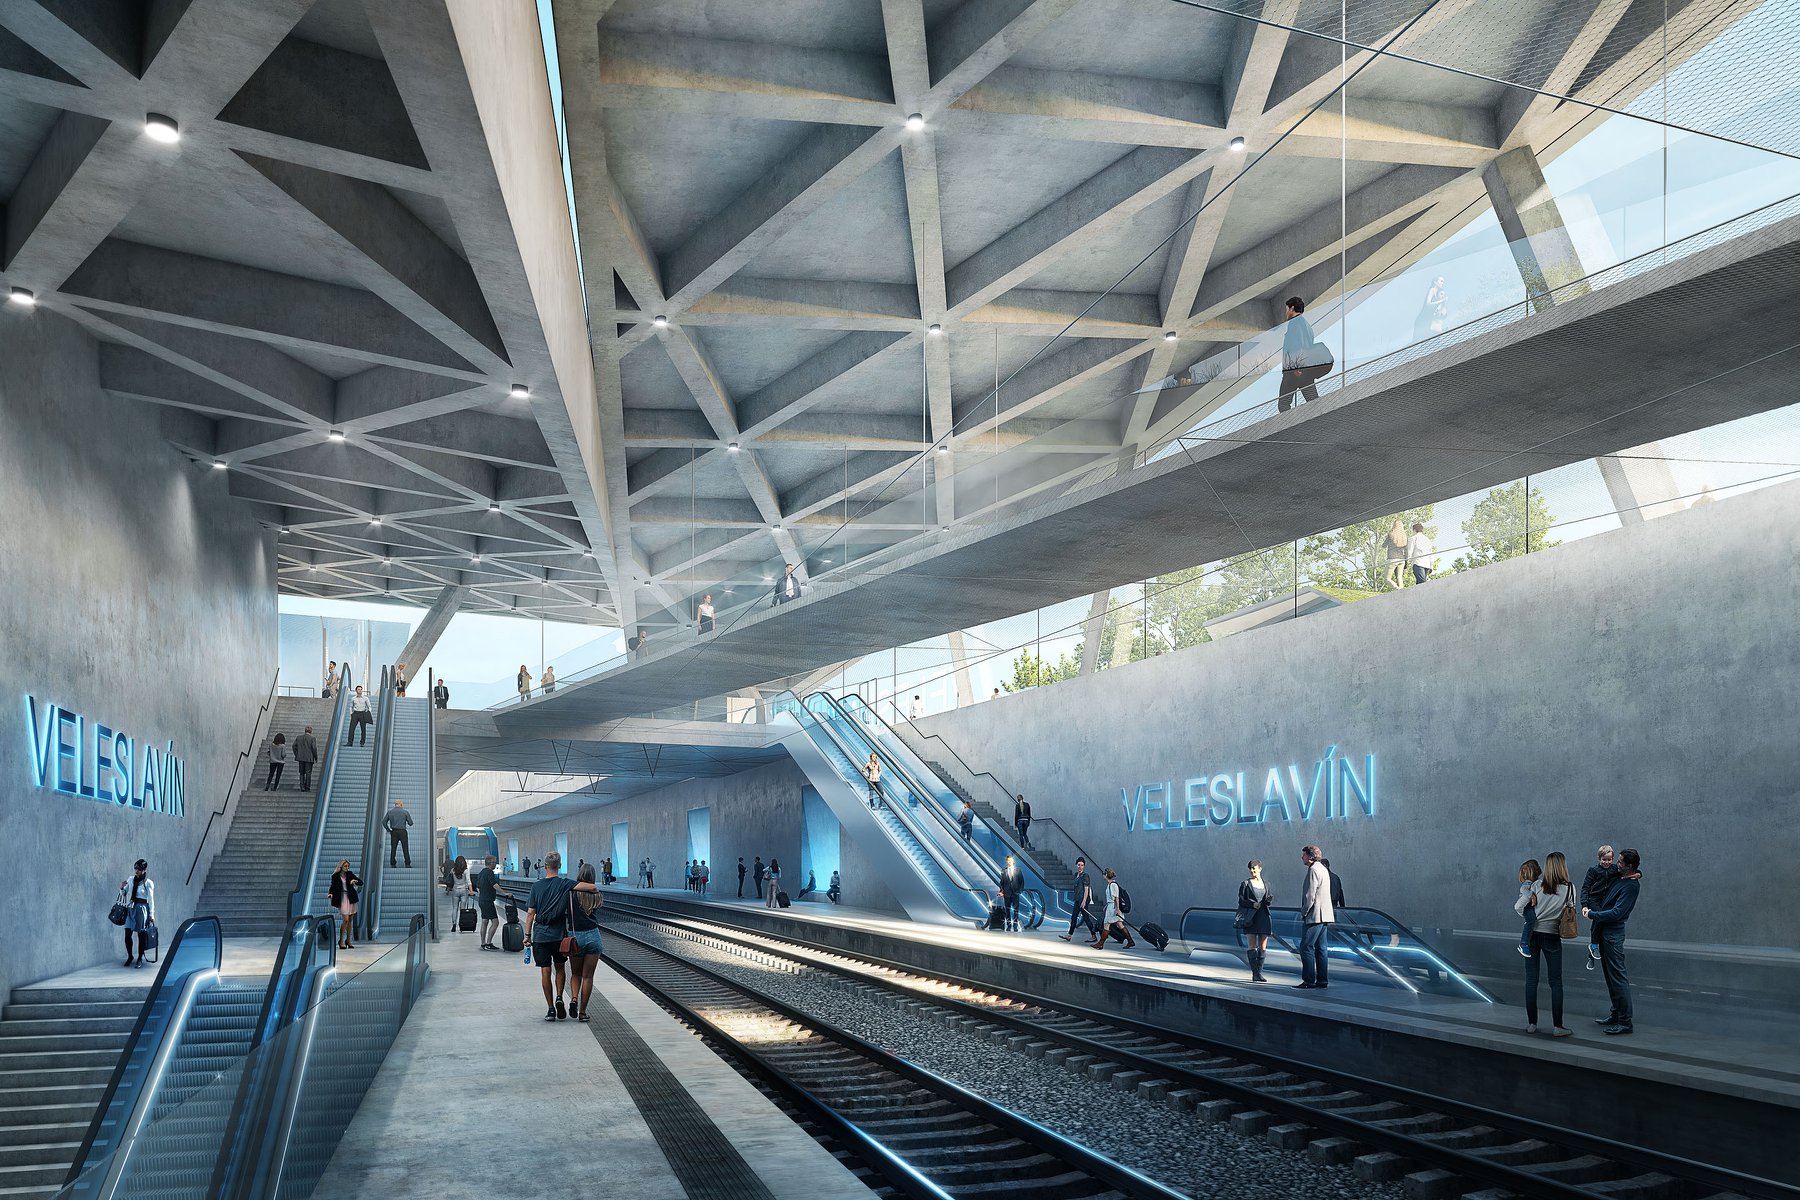 Výstava představí architektonické návrhy stanice Praha-Veleslavín